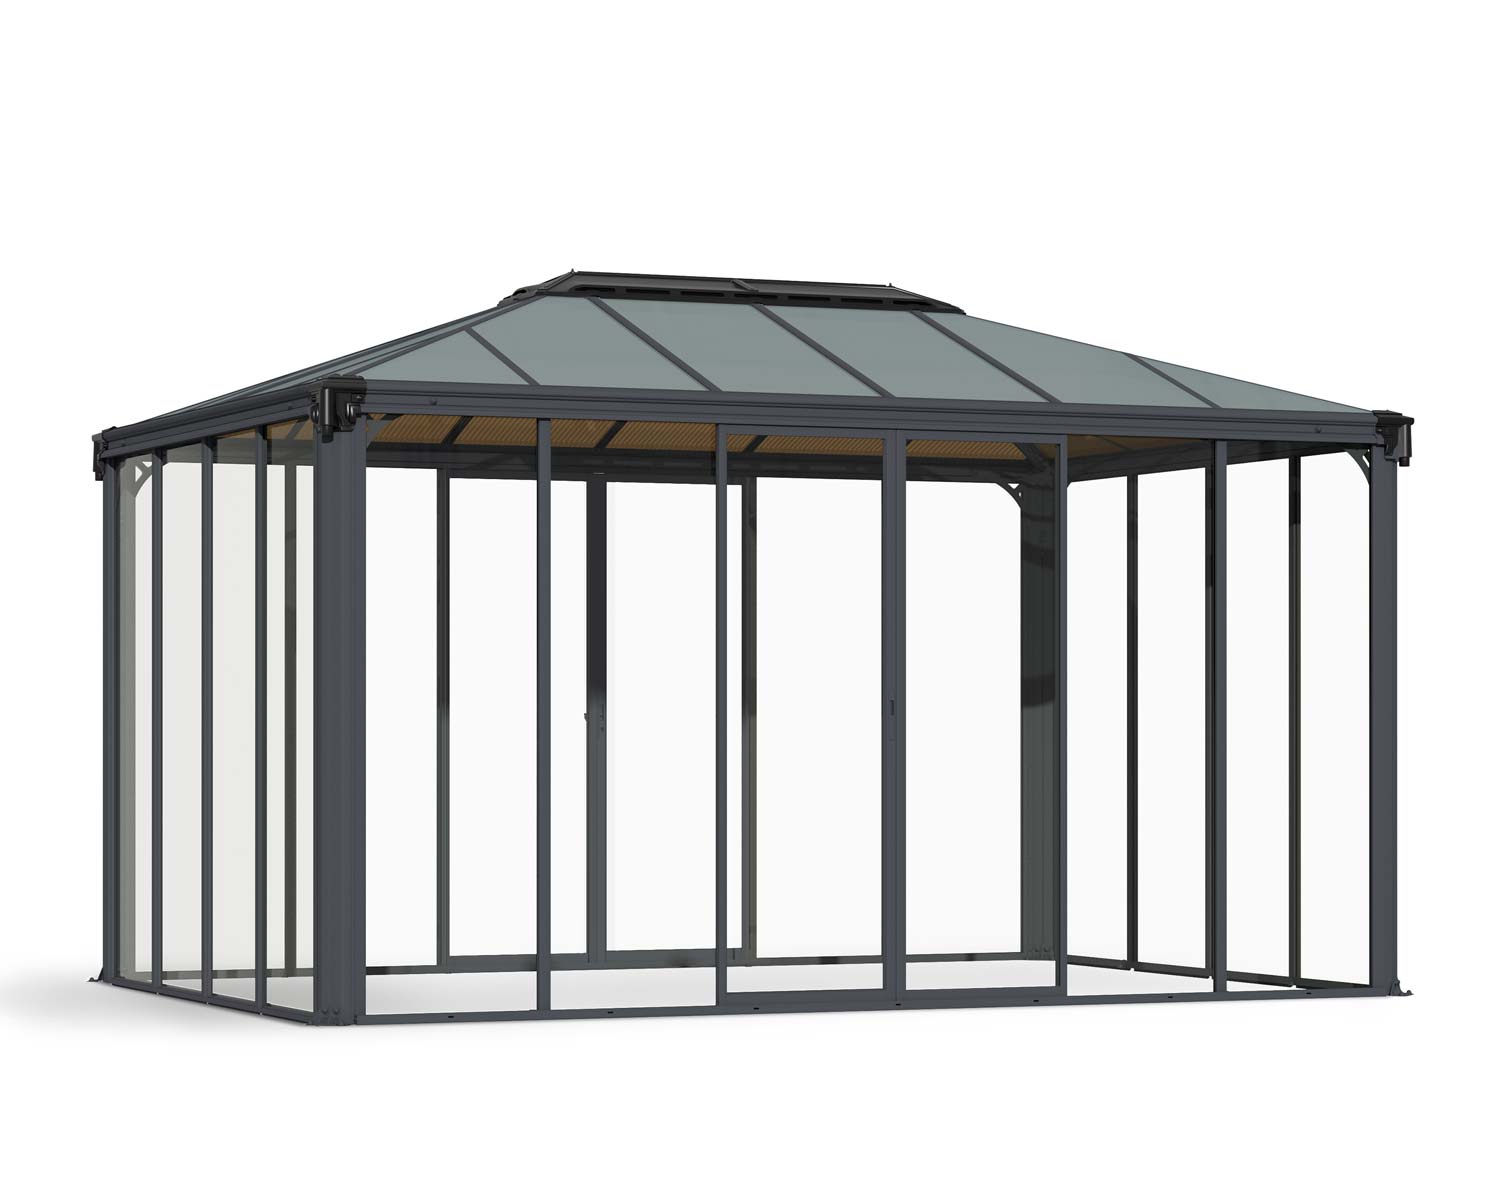 Enclosed Gazebo Kit Ledro 4300 10 ft. x 14 ft. Grey Structure &amp; Hybrid Glazing